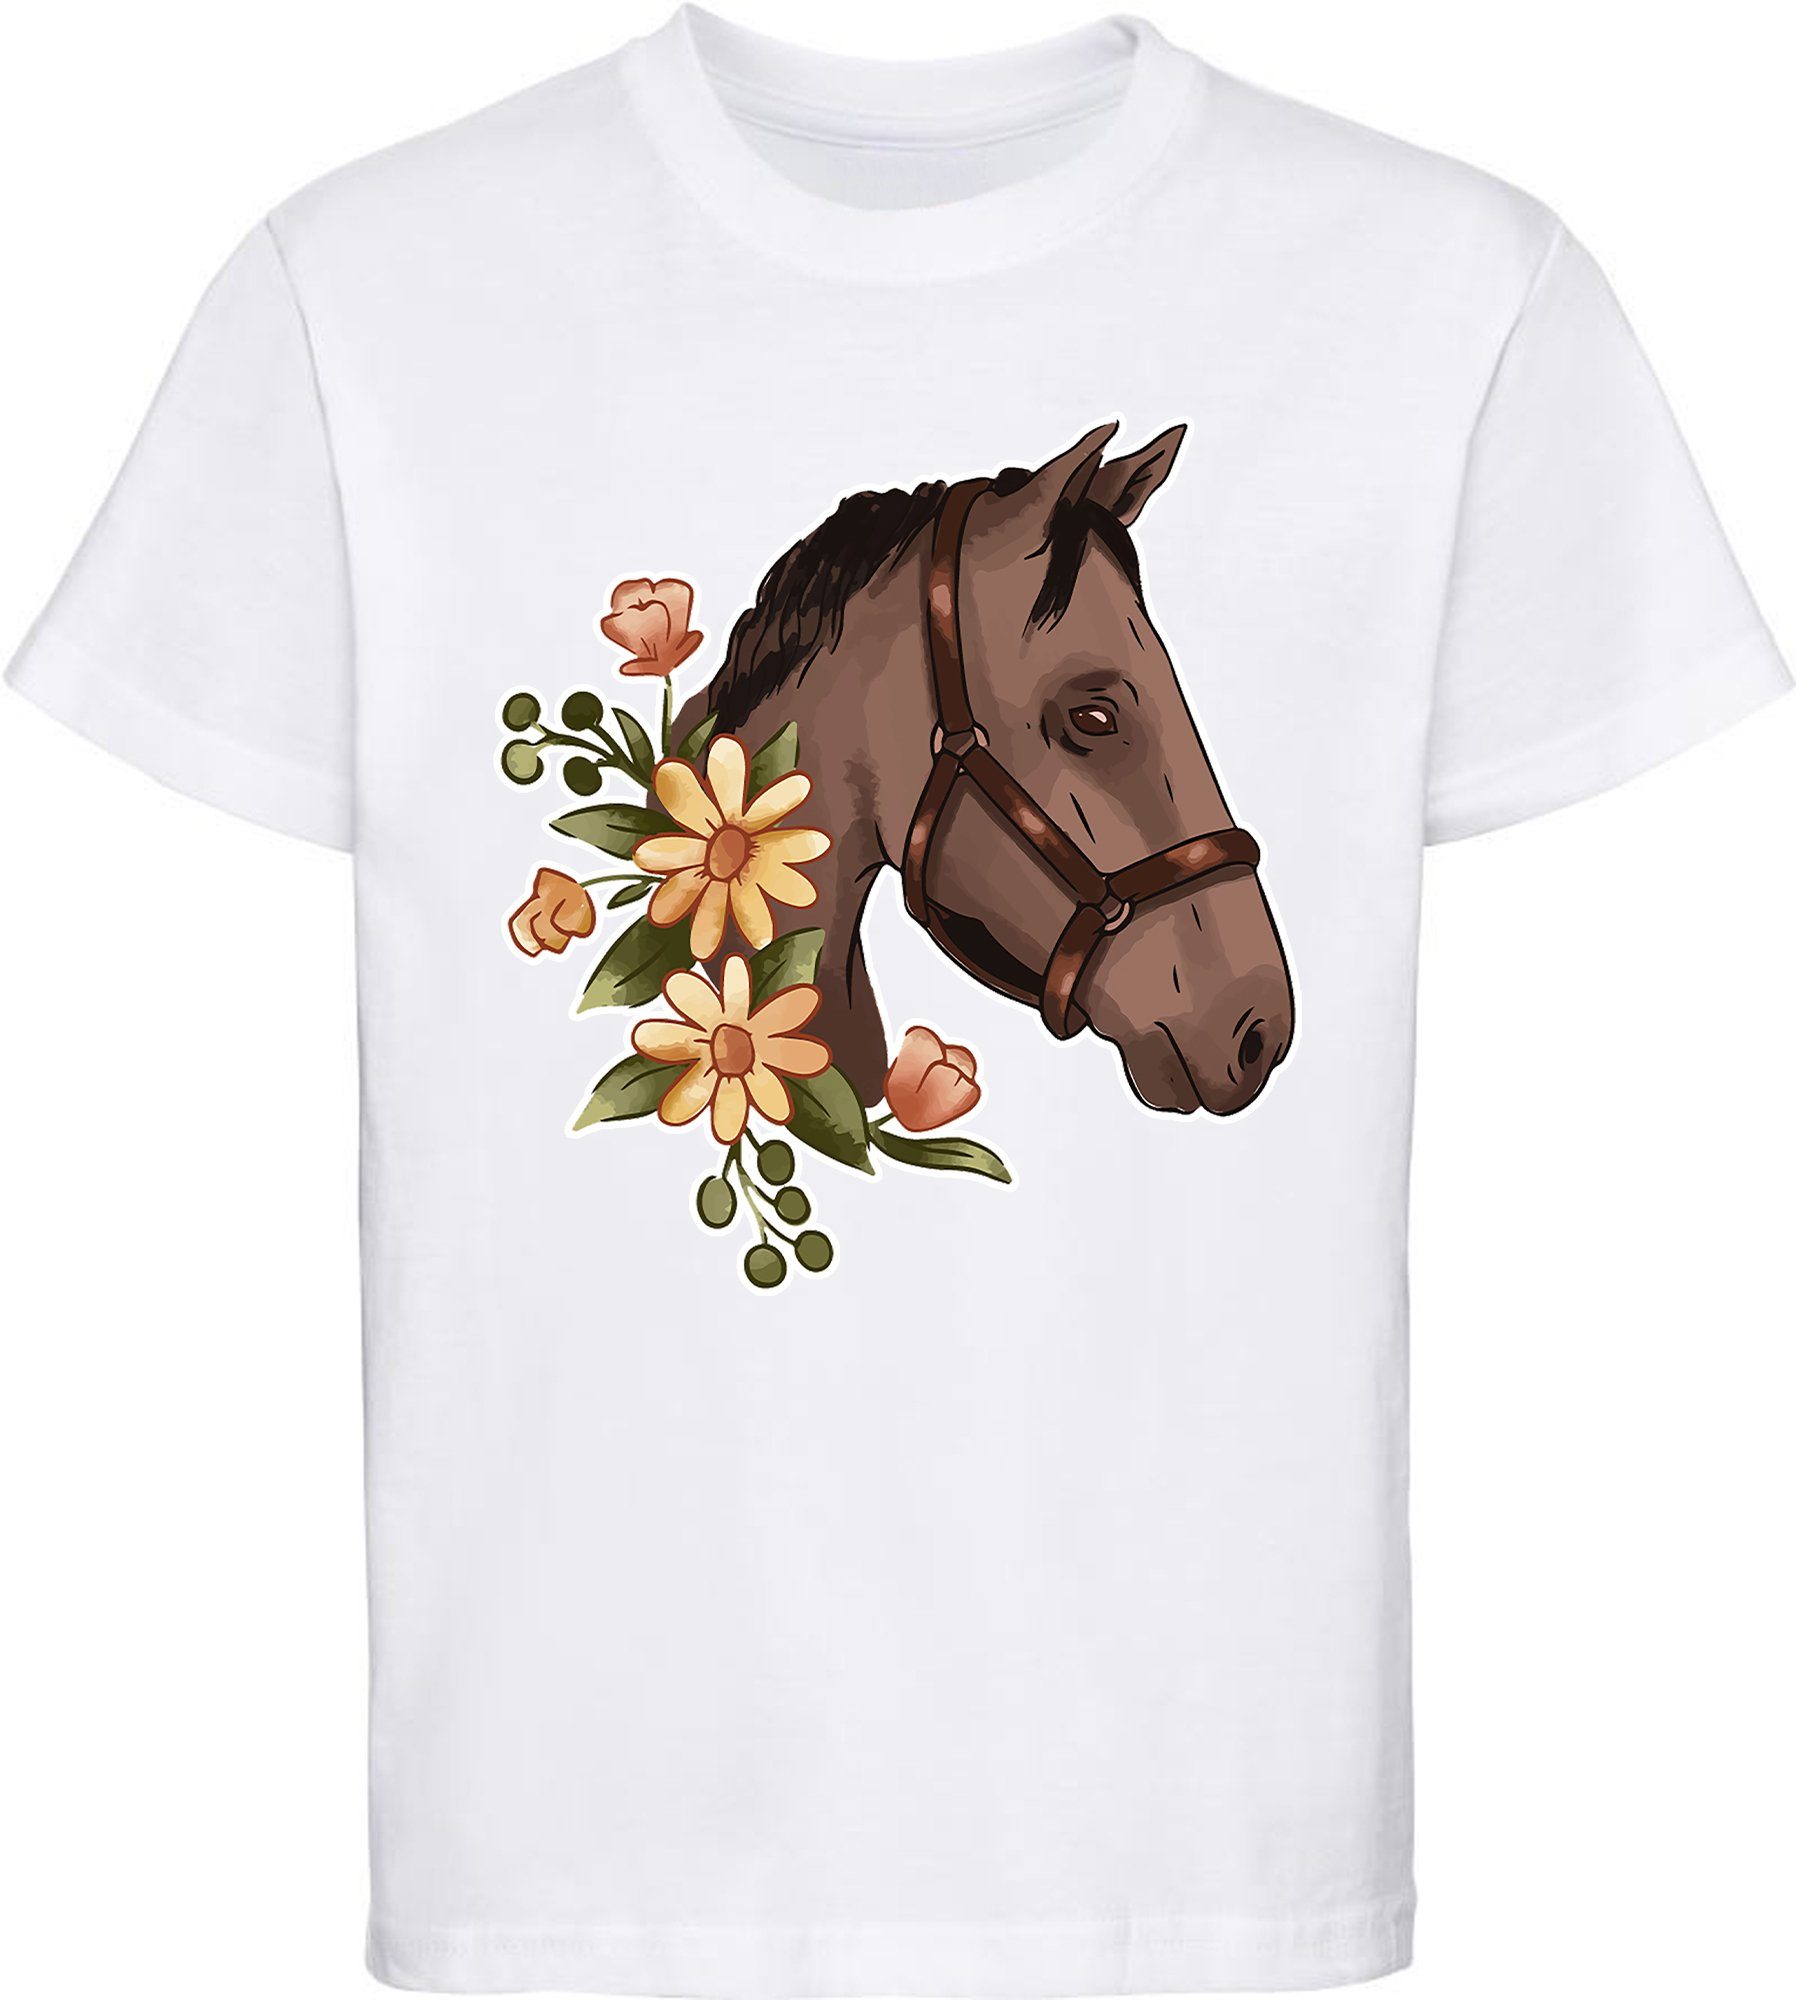 MyDesign24 Print-Shirt bedrucktes Mädchen T-Shirt - Dunkelbrauner Pferdekopf mit Blumen Baumwollshirt mit Aufdruck, i180 weiss